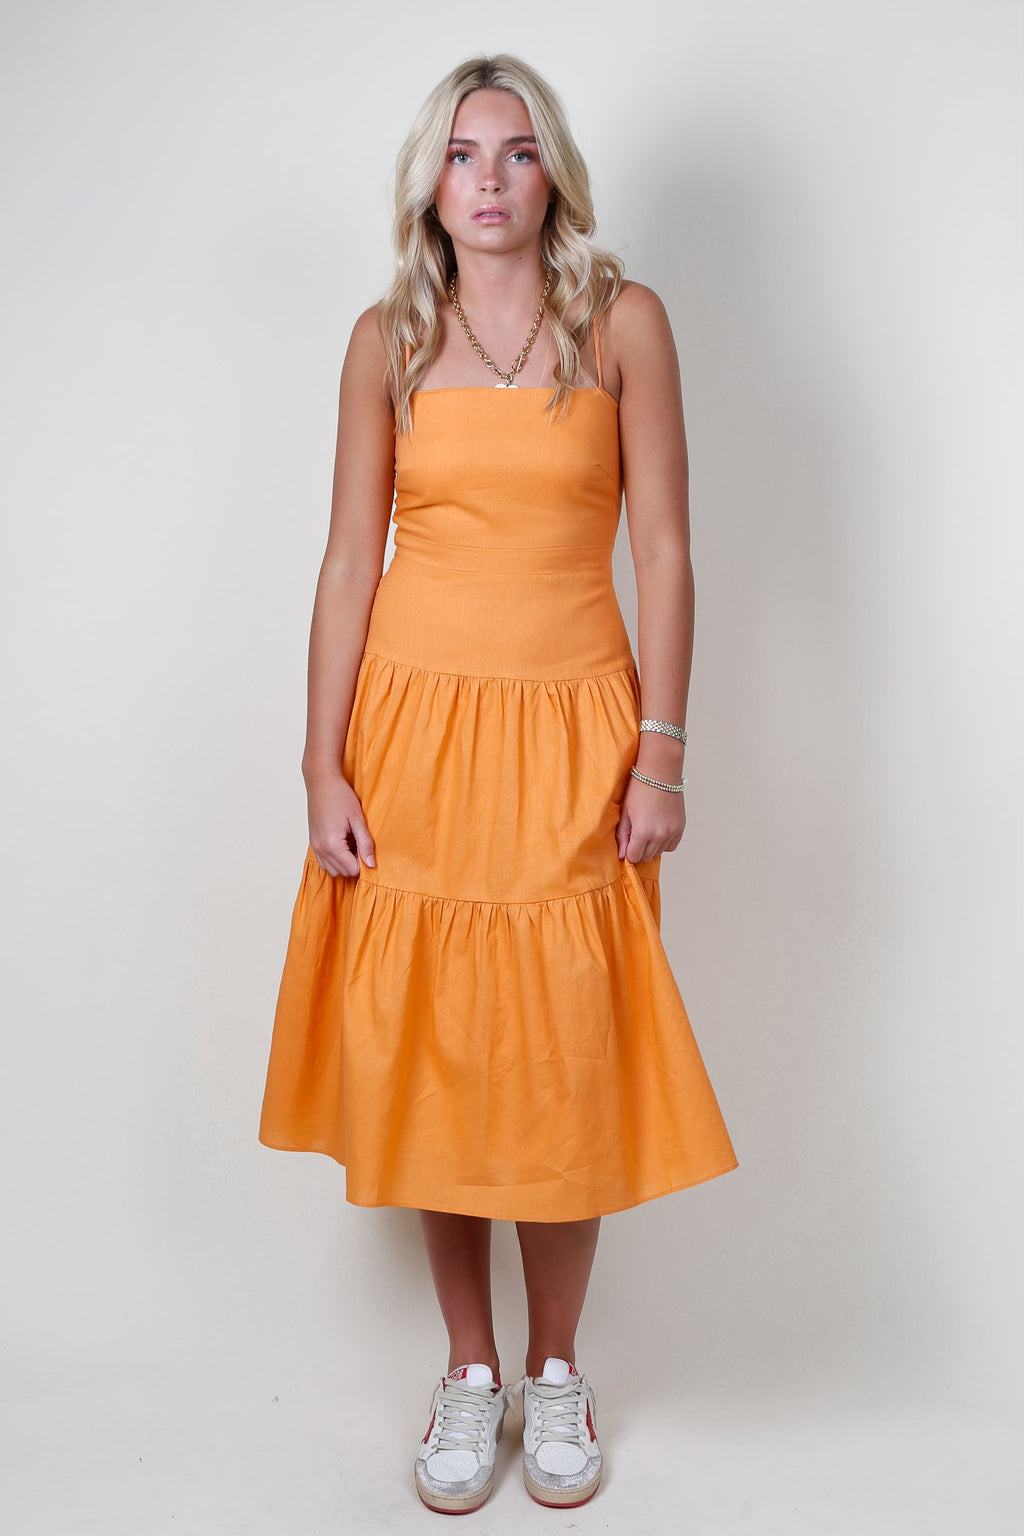 LUCY PARIS | Jill Drop Waist Dress - Orange